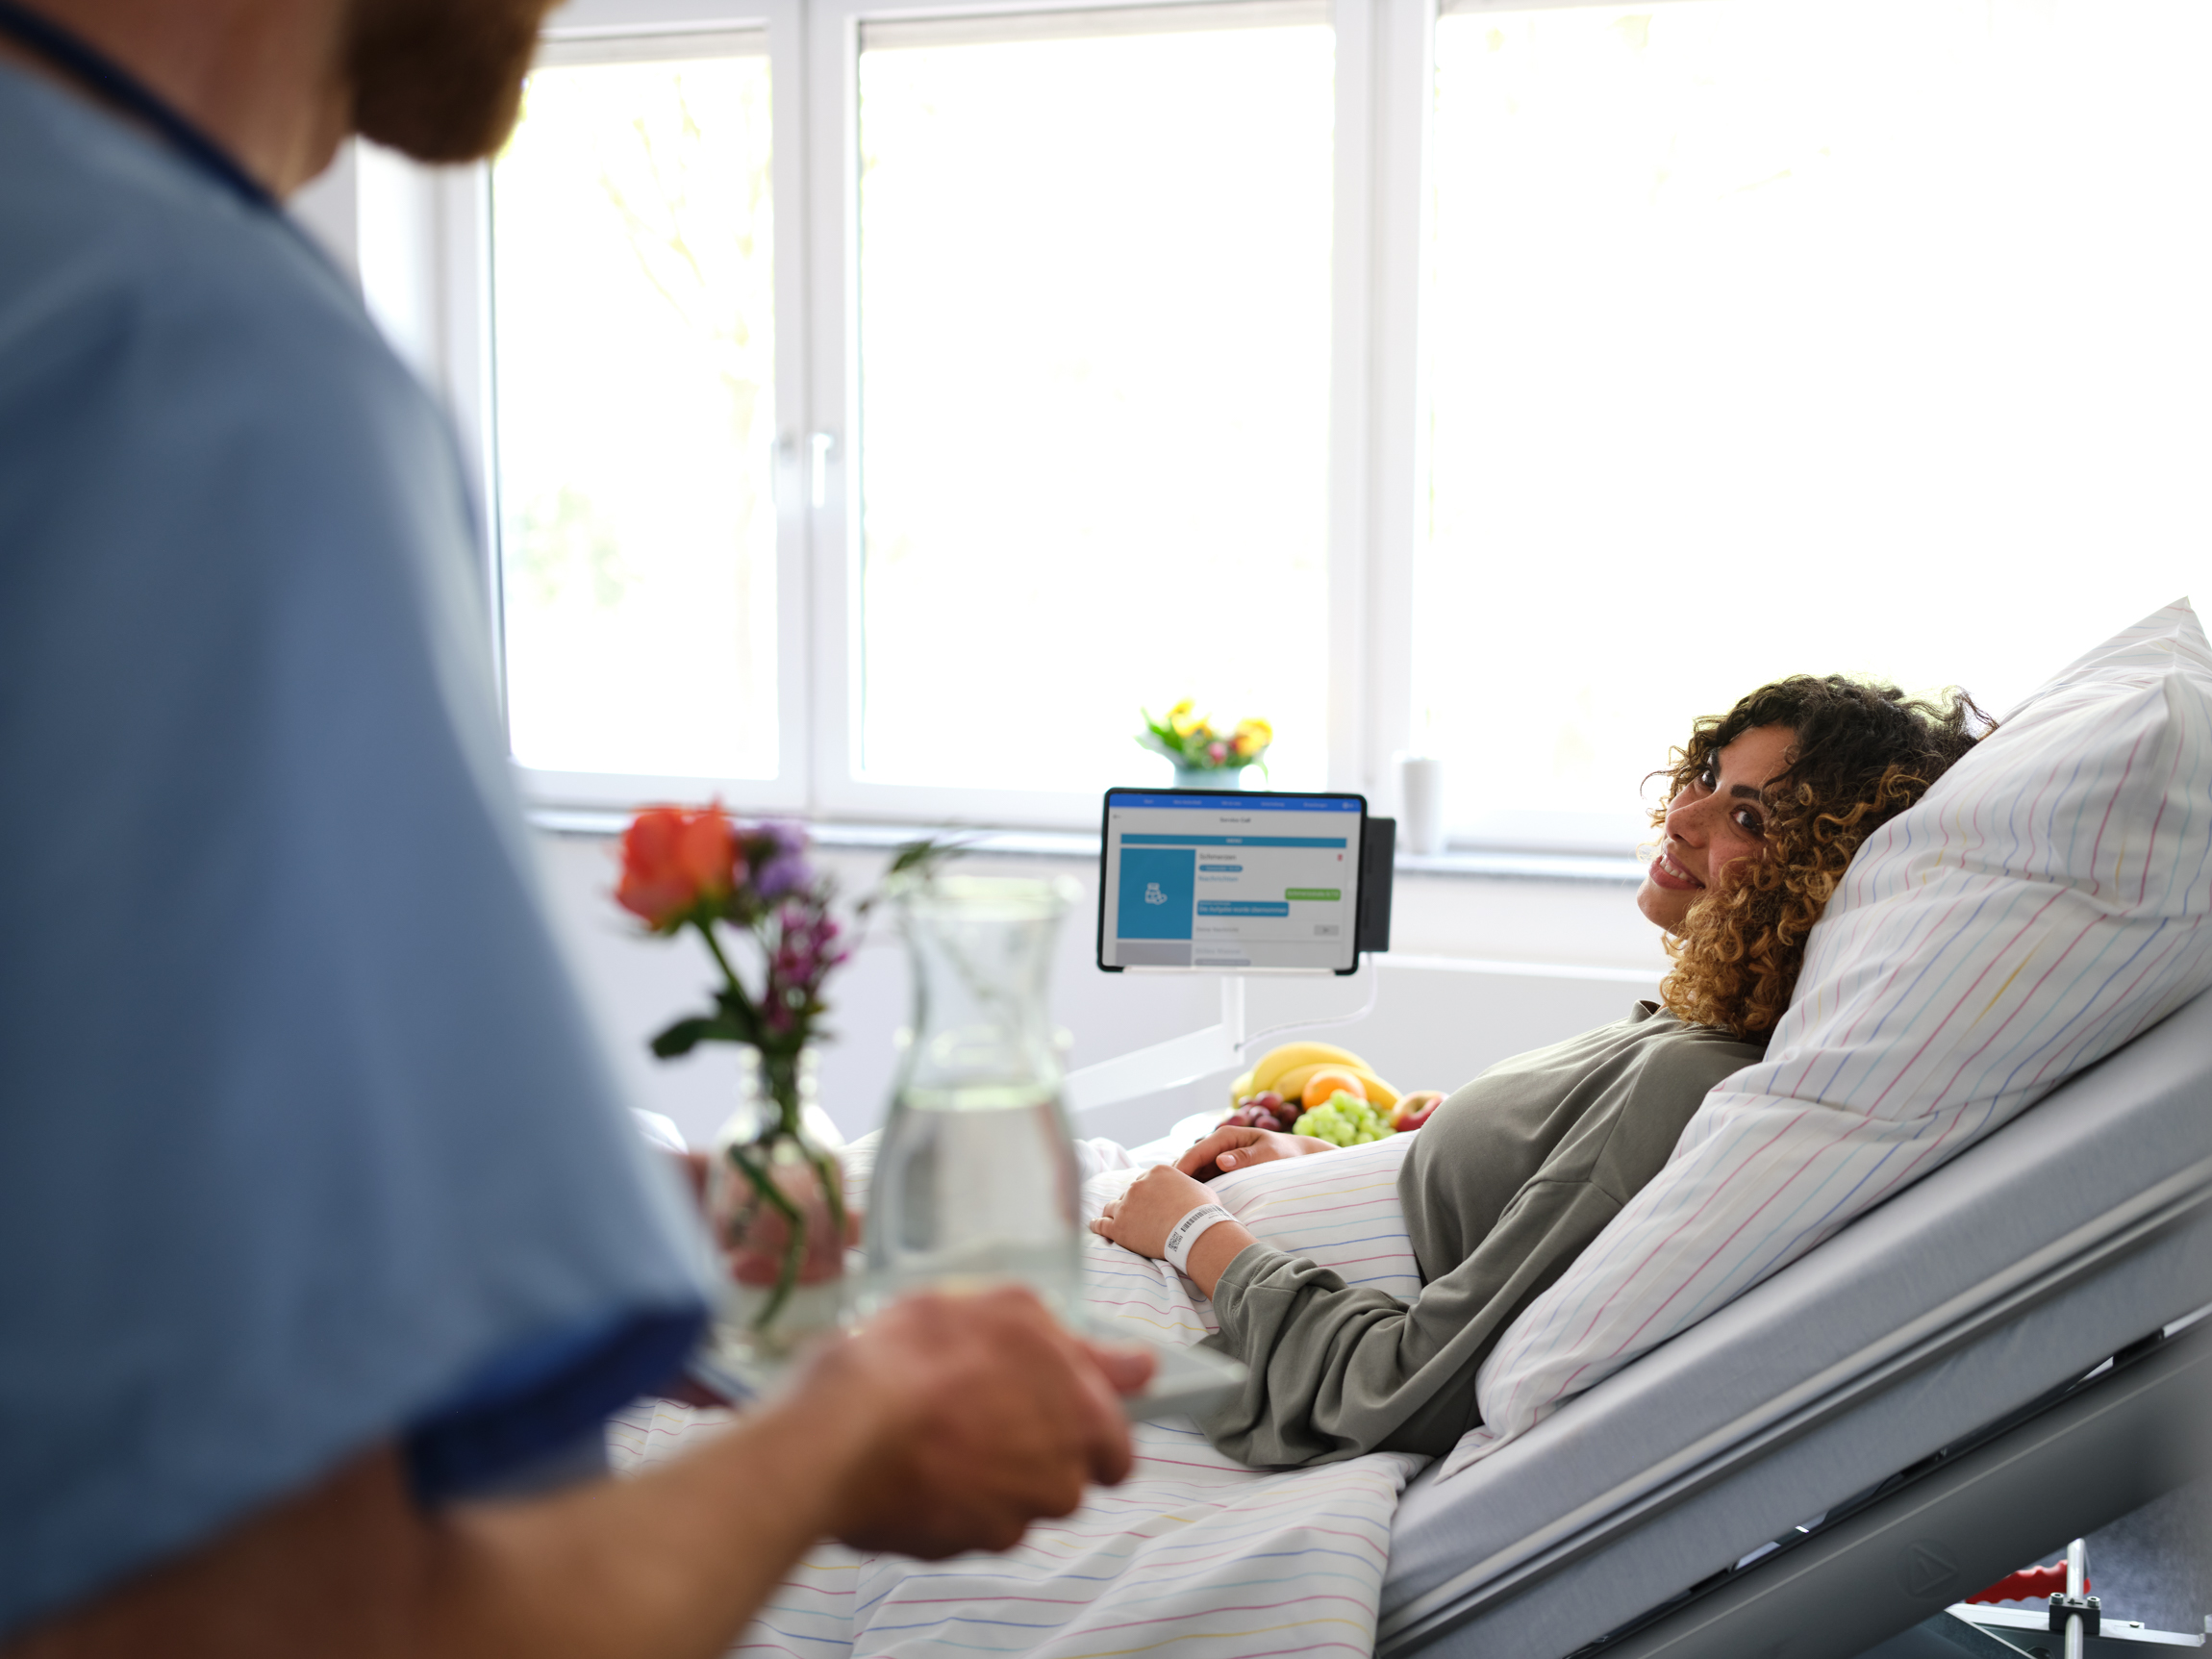 Patientenkommunikation: Pfleger bringt junger Patientin Wasser ans Bett, das sie über den Digitalen Serviceruf bestellt hat.